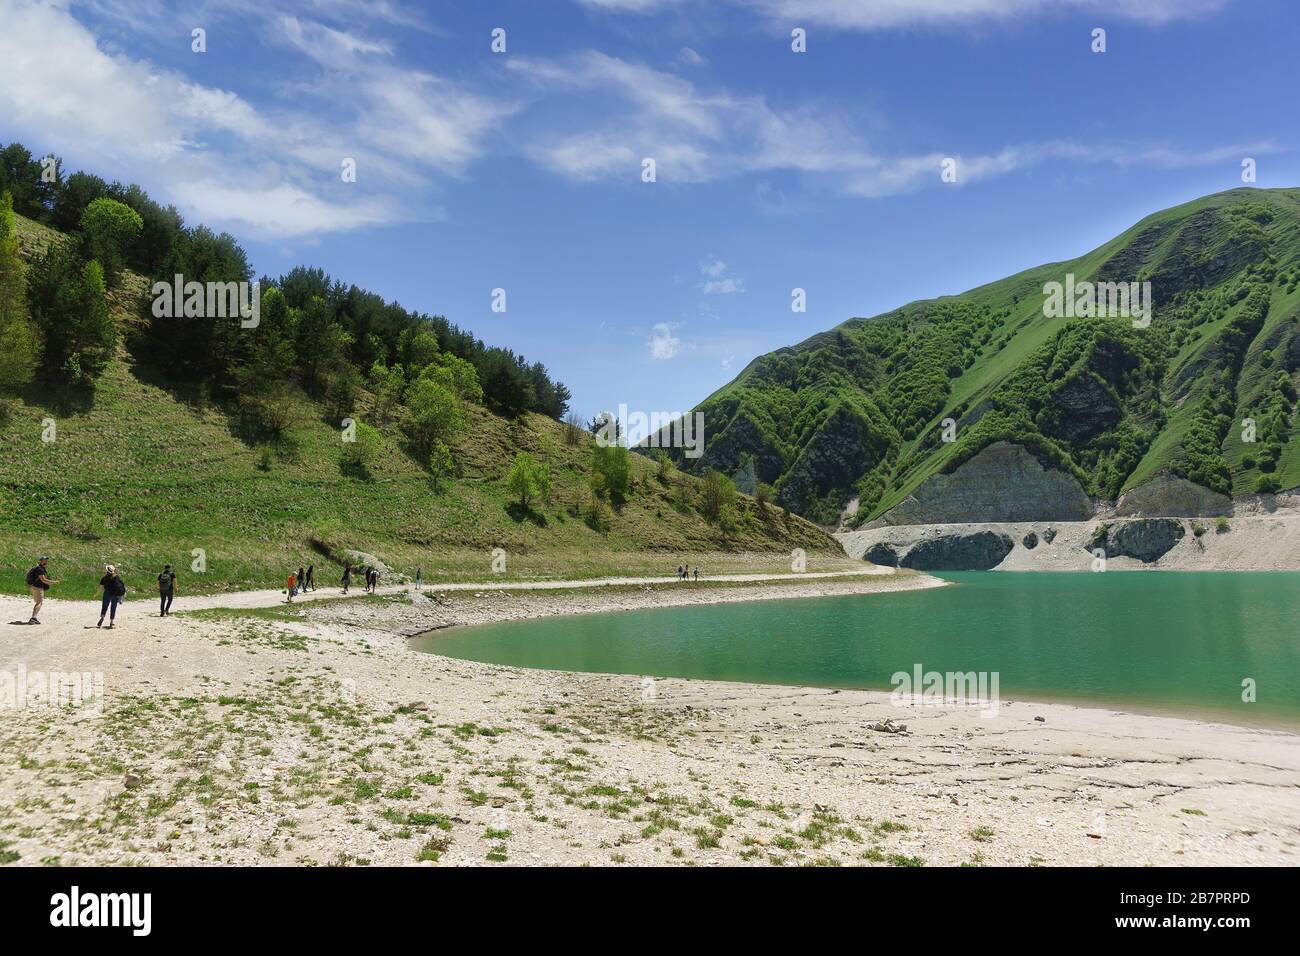 Touristen am Ufer des Bergsees Kezenoi am Botlikh-Distrikt der Republik Dagestan. Saftige Grüns im Frühsommer. Russland, Nord-Cau Stockfoto